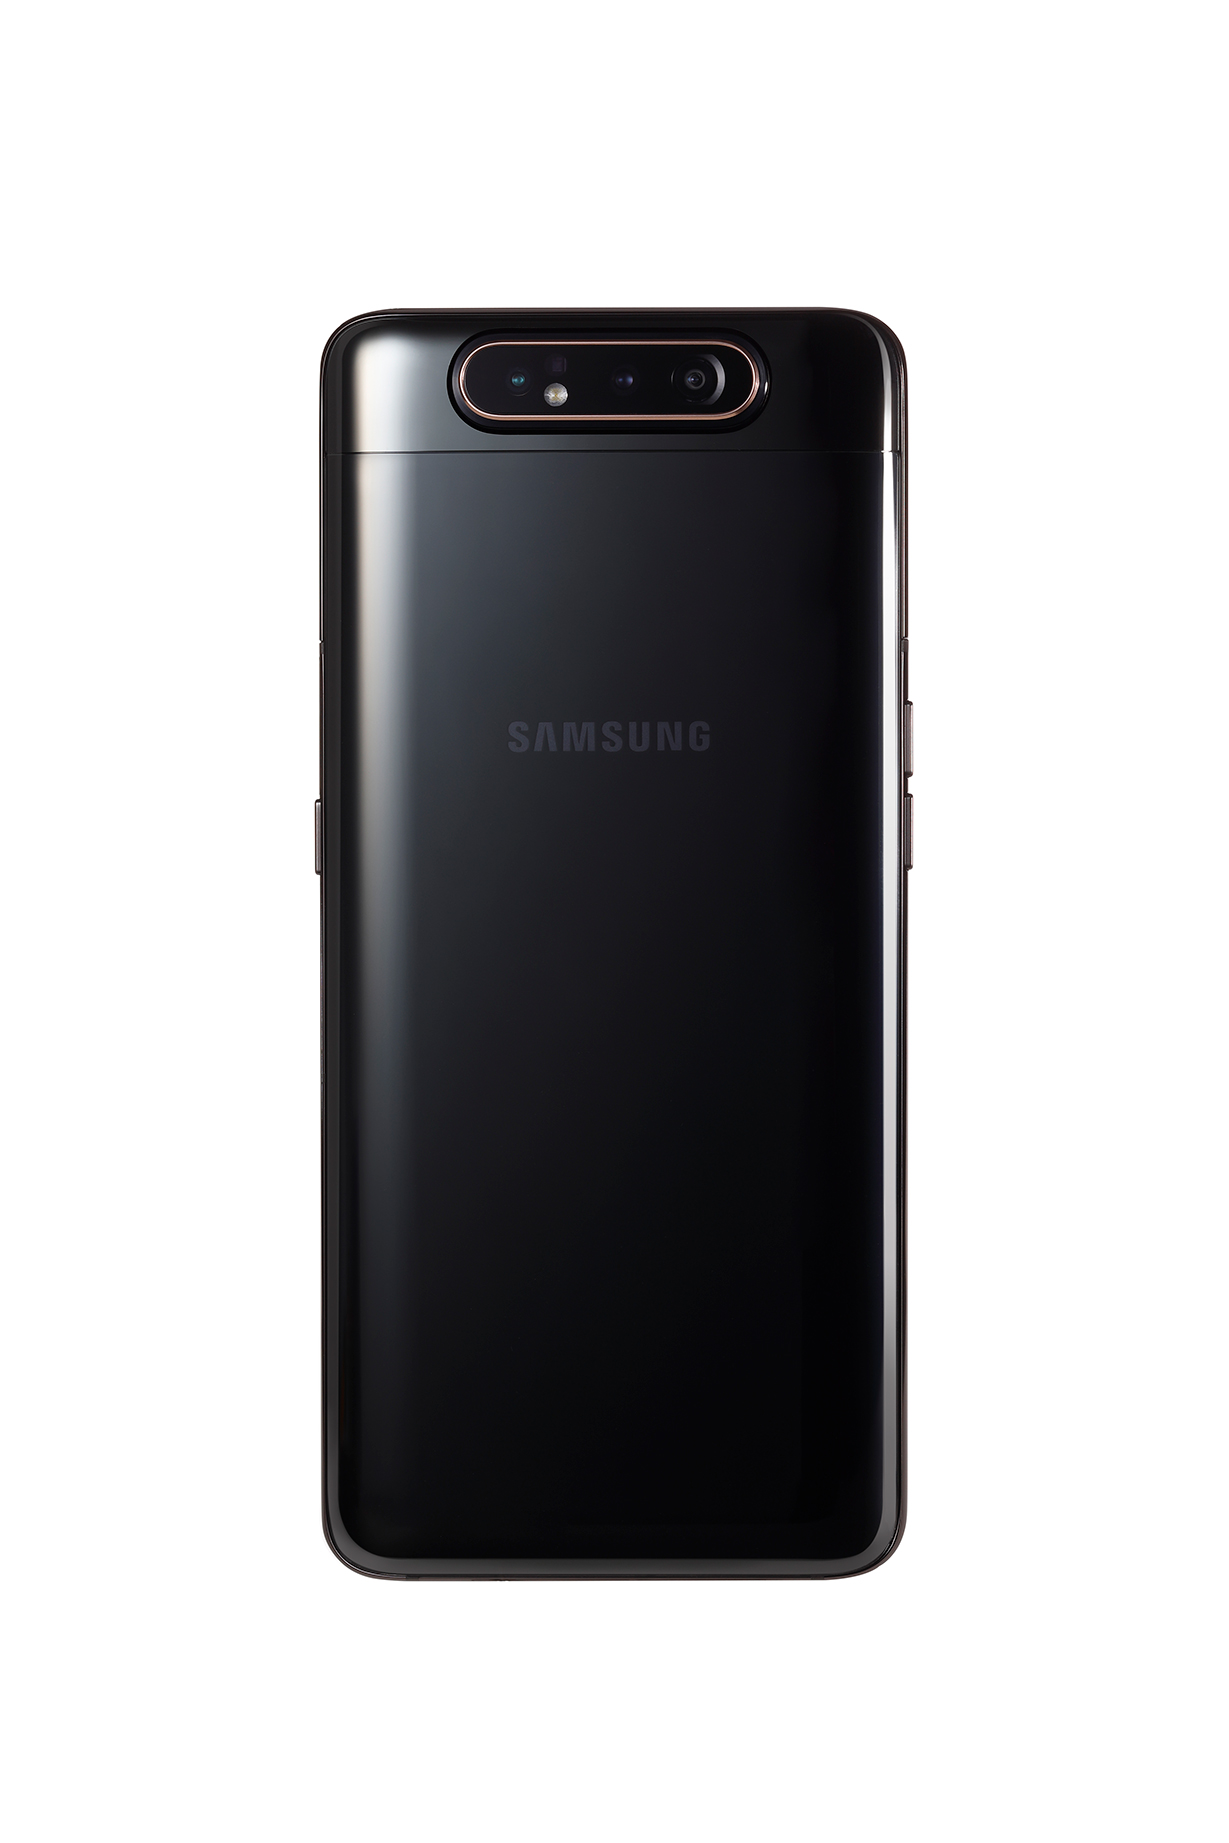 Galaxy A80 lên kệ ngày 6/7, giá 14,99 triệu đồng 2